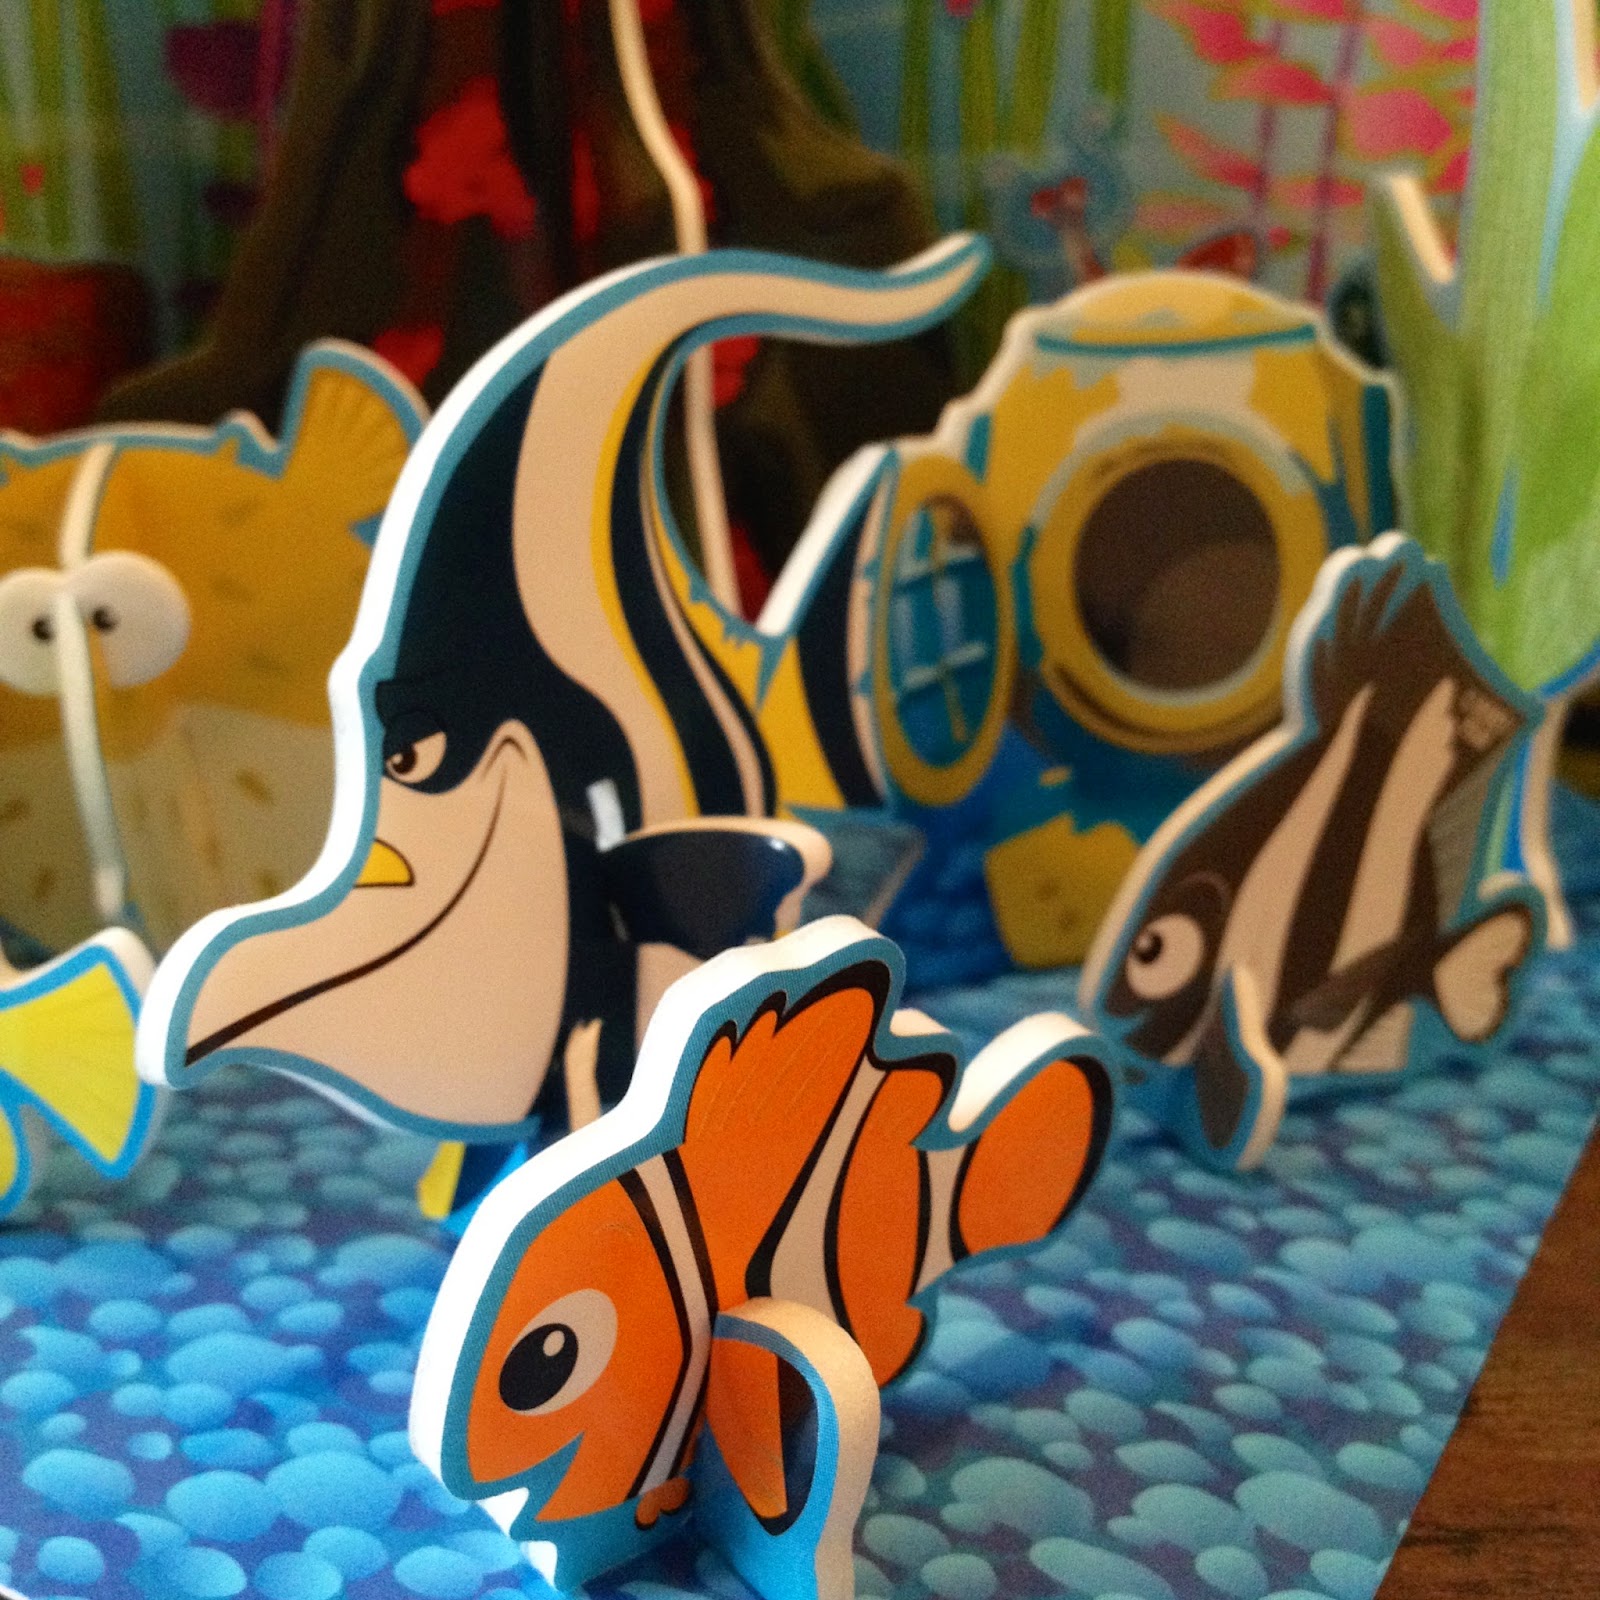 Finding Nemo: 3D Foam Puzzle.